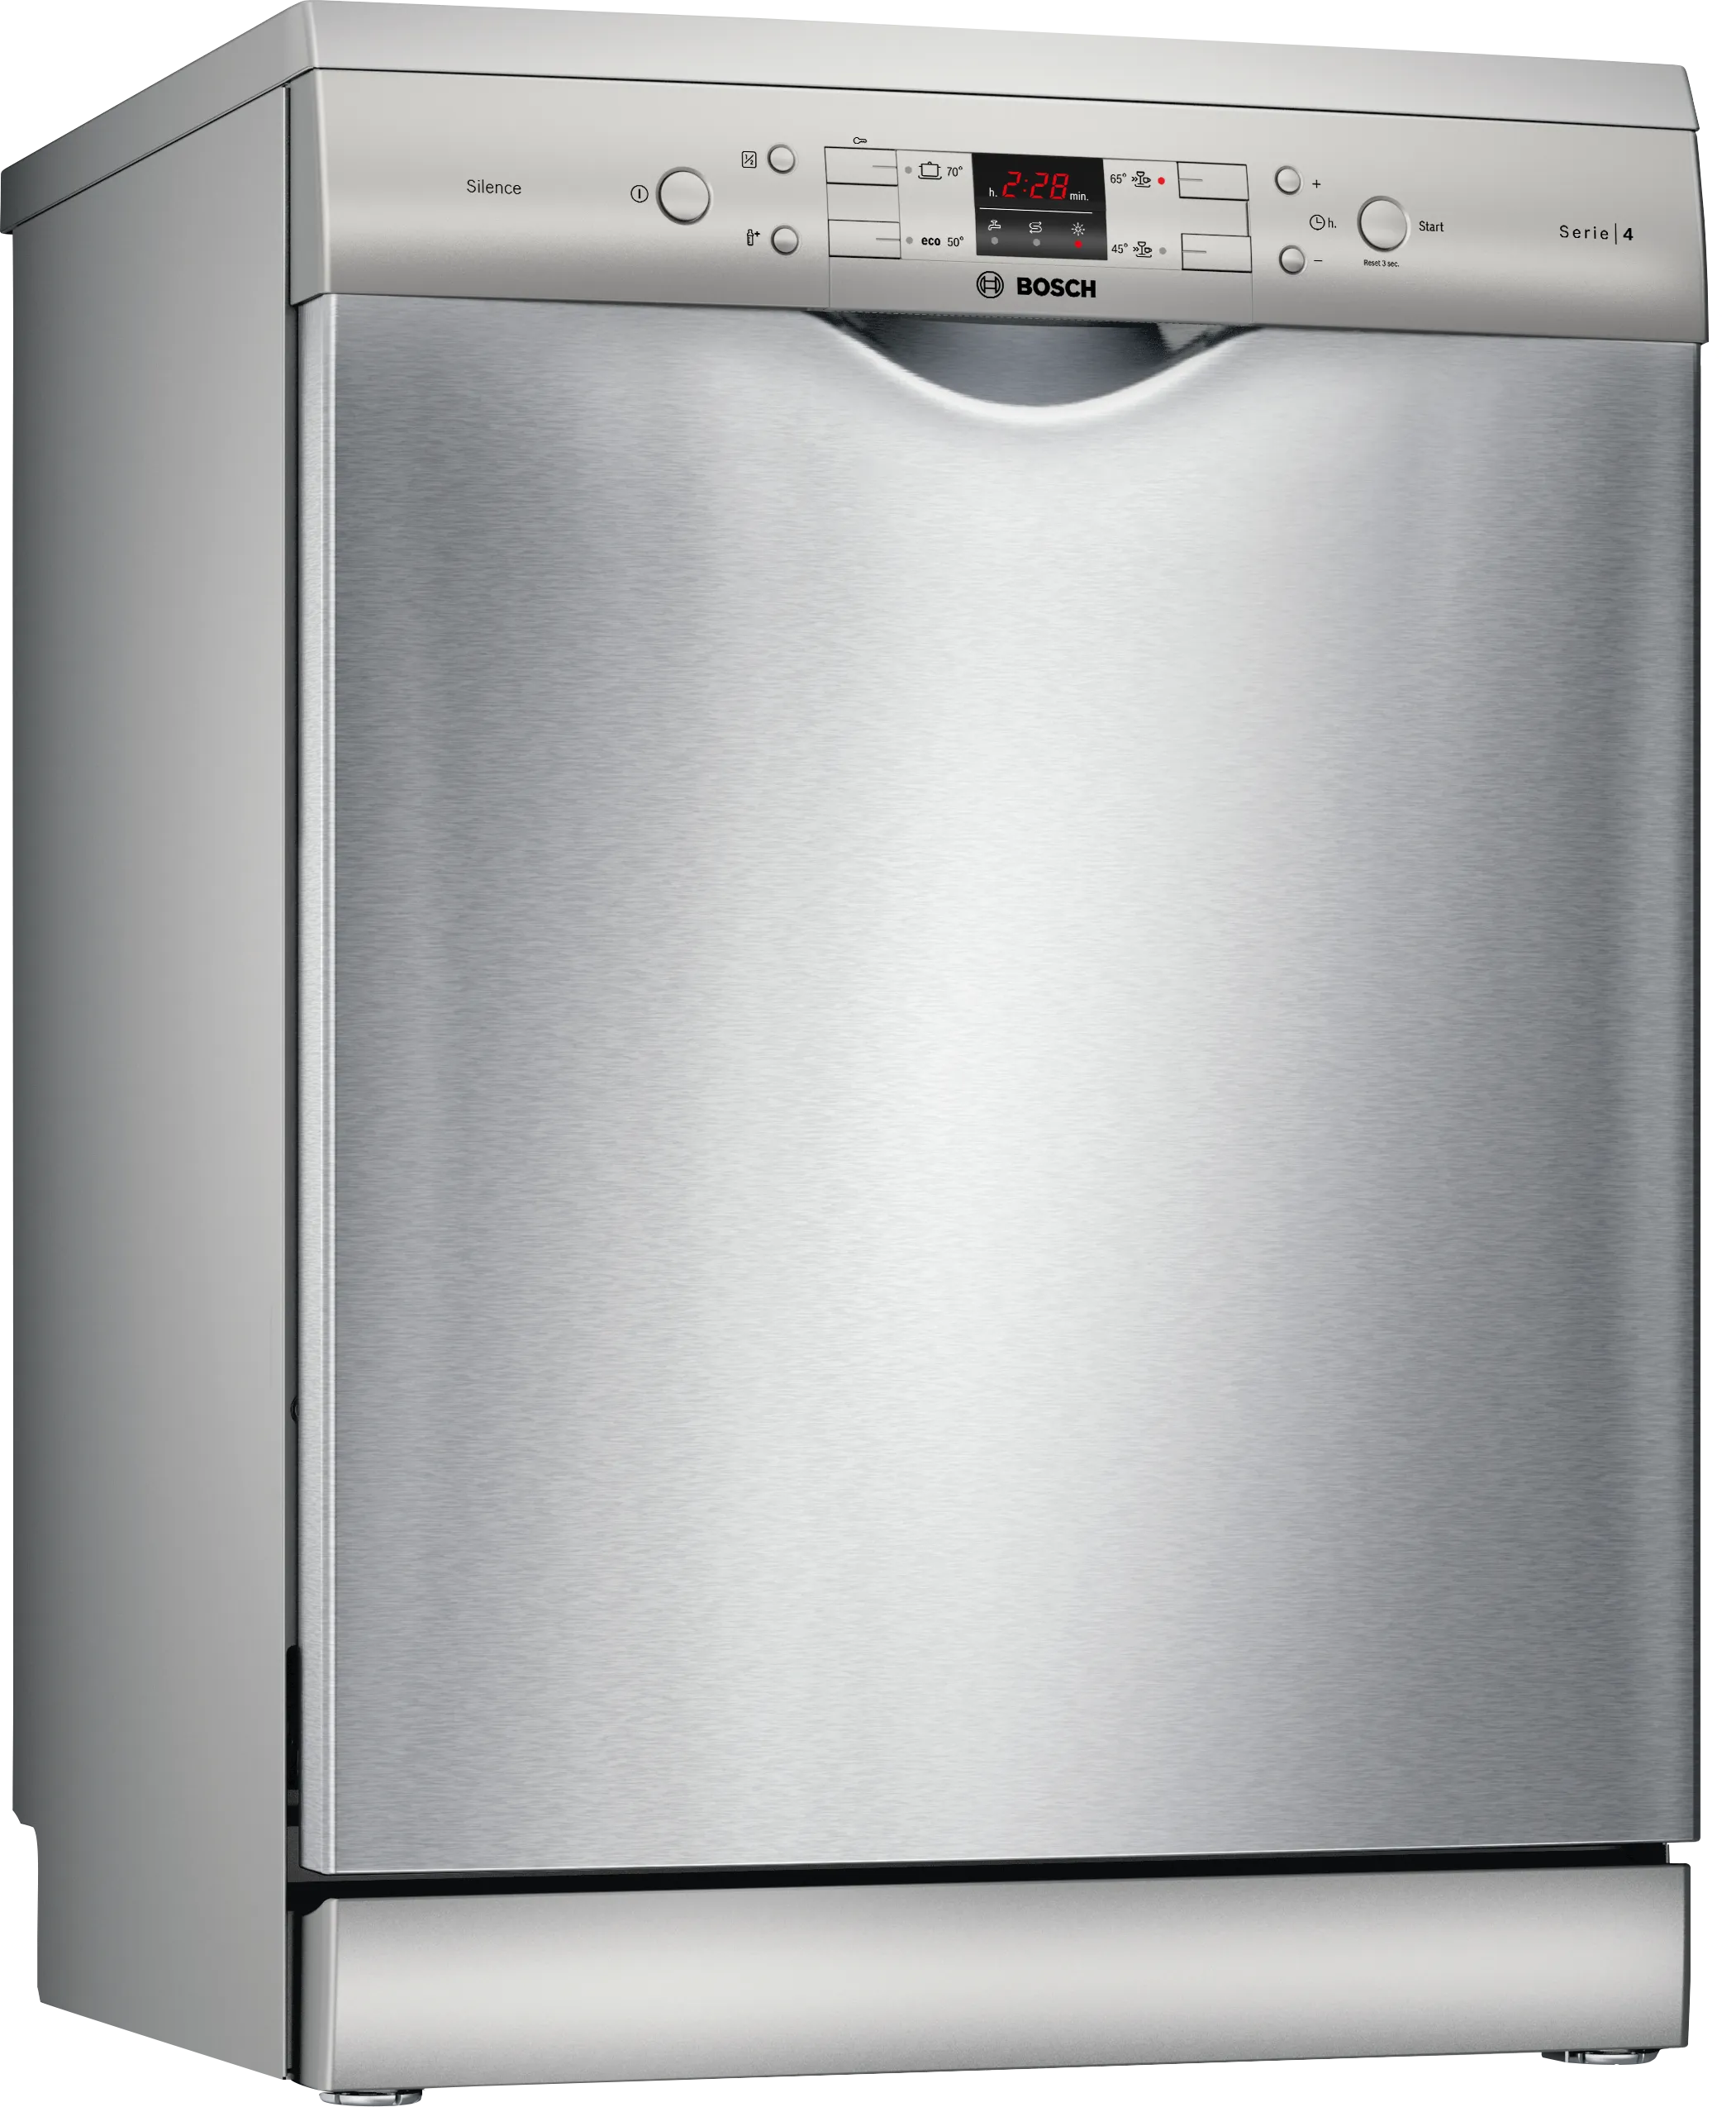 Серия 4 Отдельностоящие посудомоечные машины 60 cm серебро нержавеющая сталь 